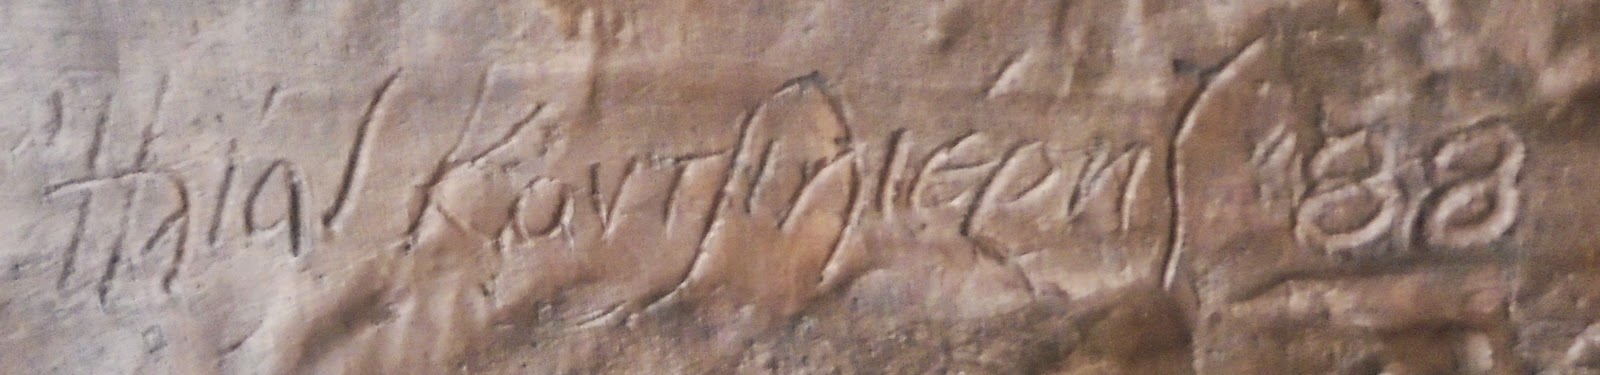 προτομή του Δημήτριου Ψαρρού στο Πολεμικό Μουσείο των Αθηνών